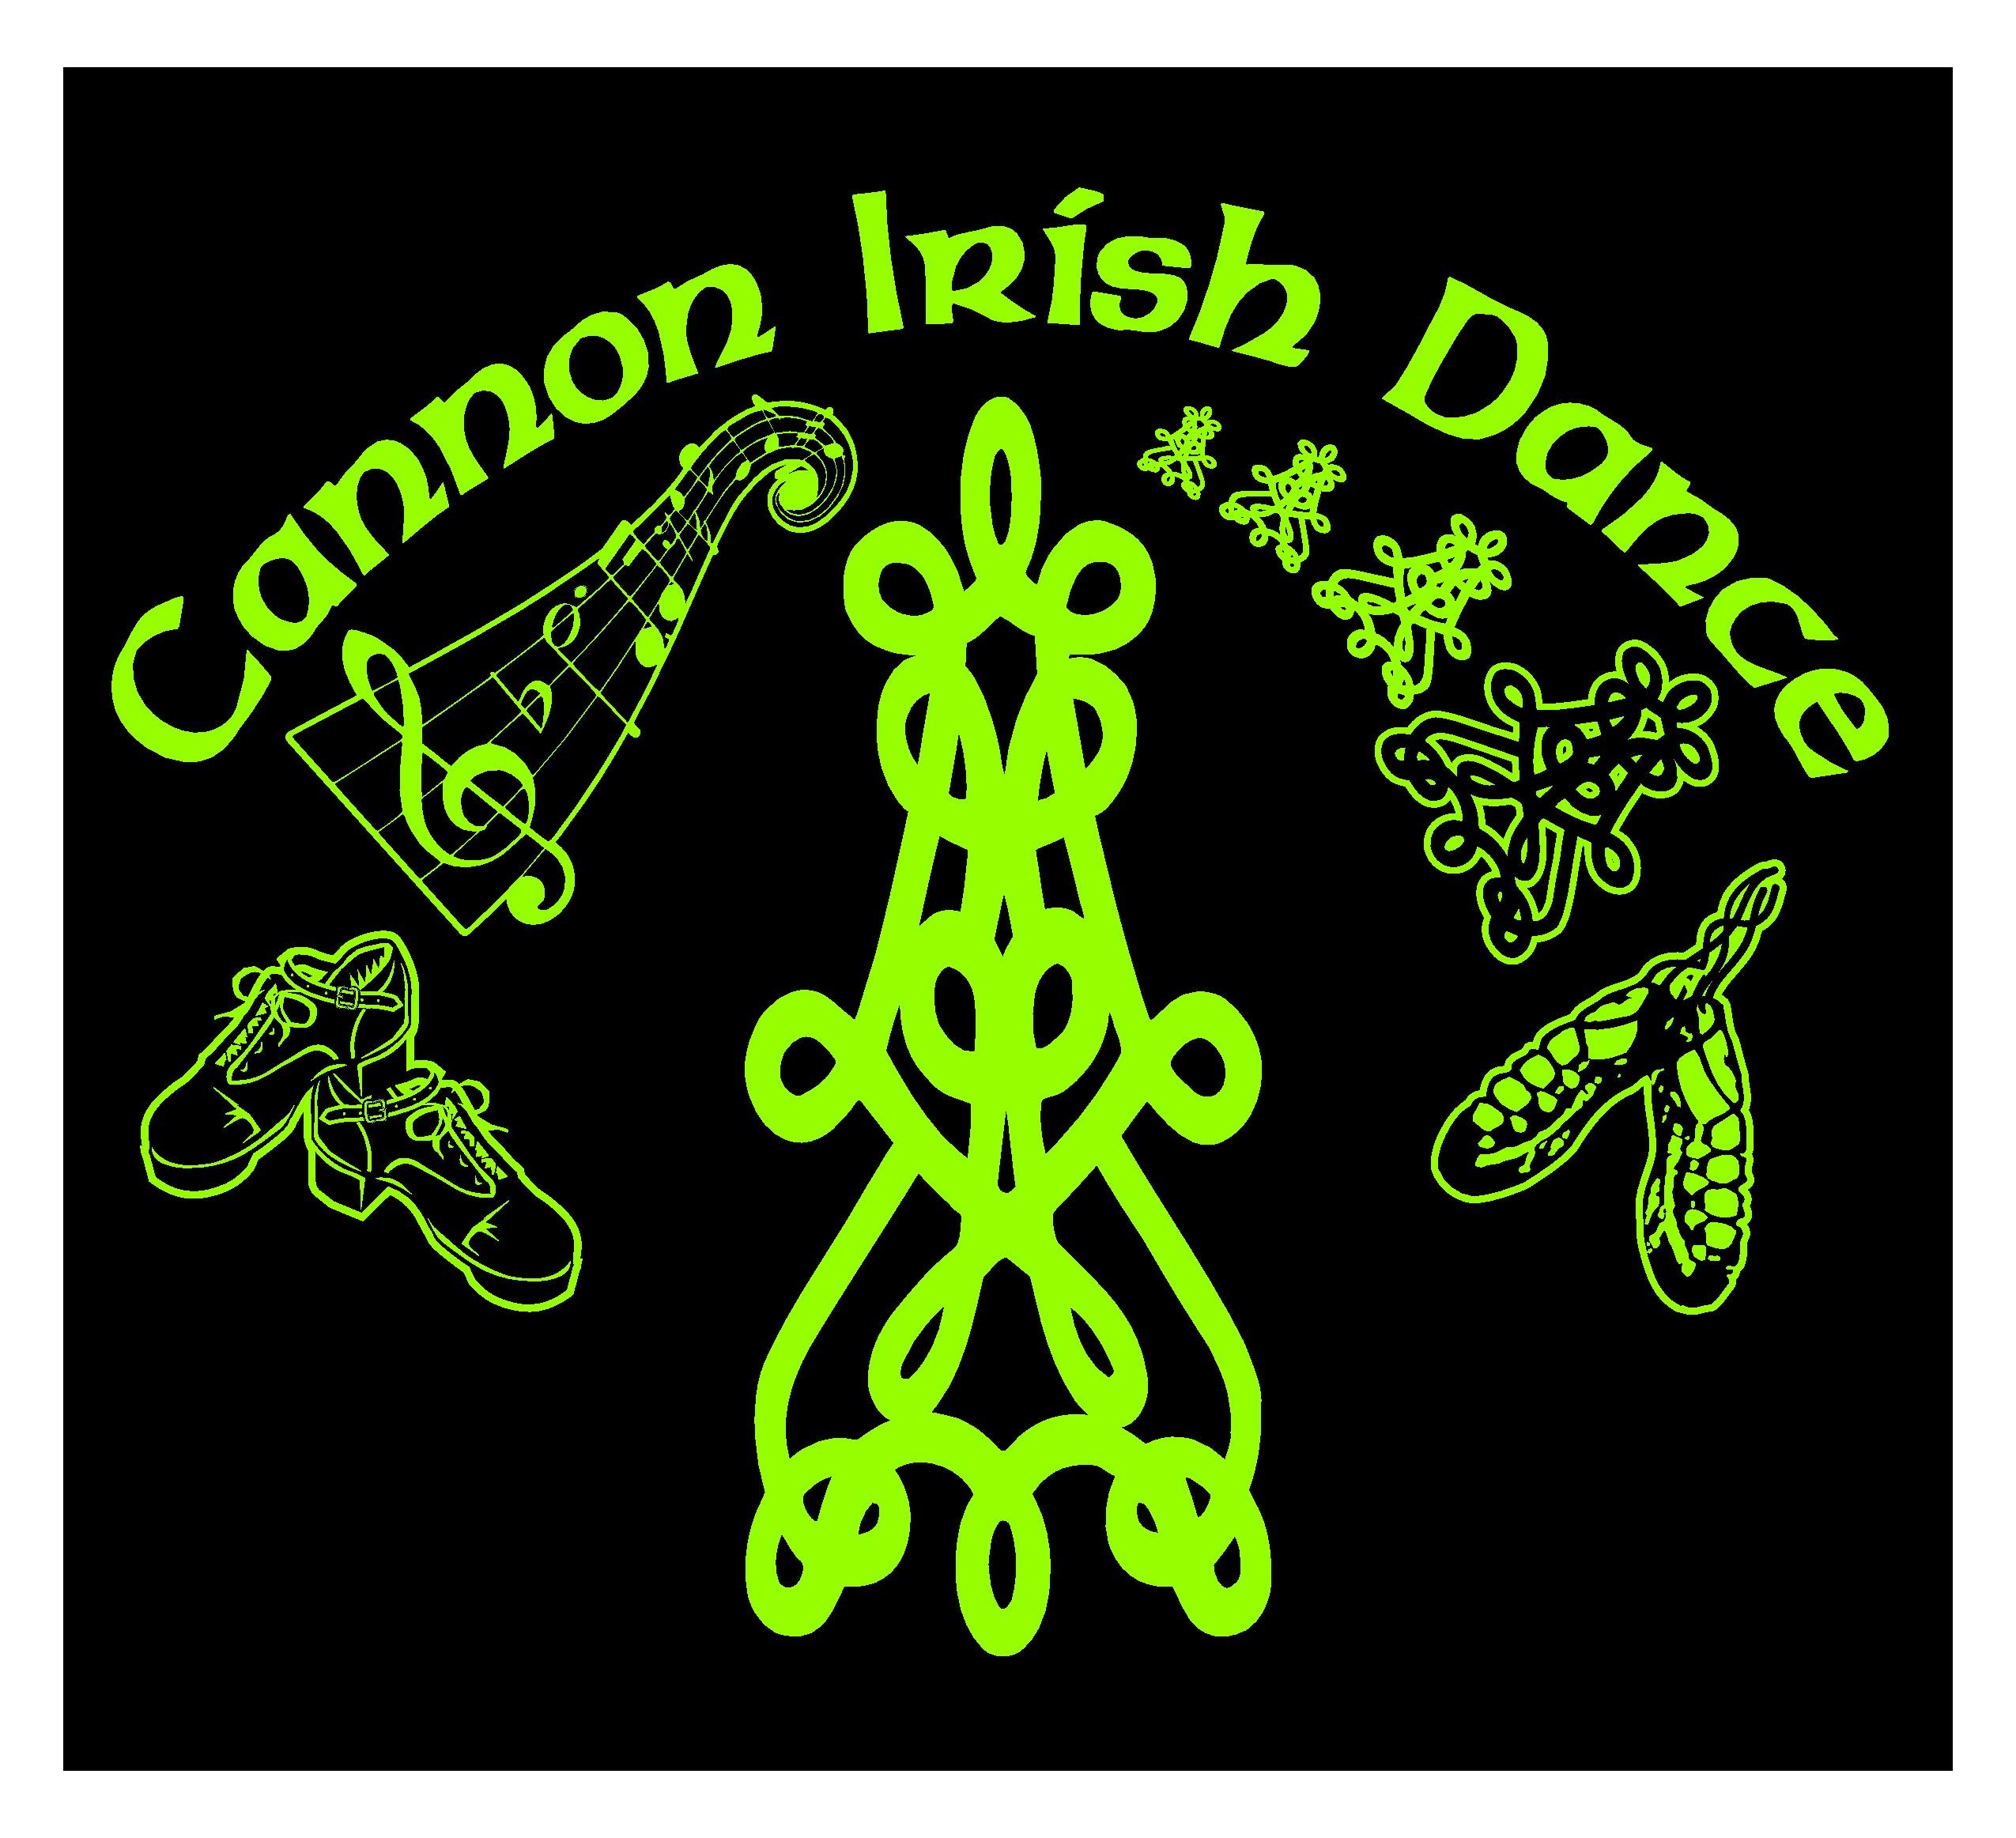 Cannon Irish Dance logo